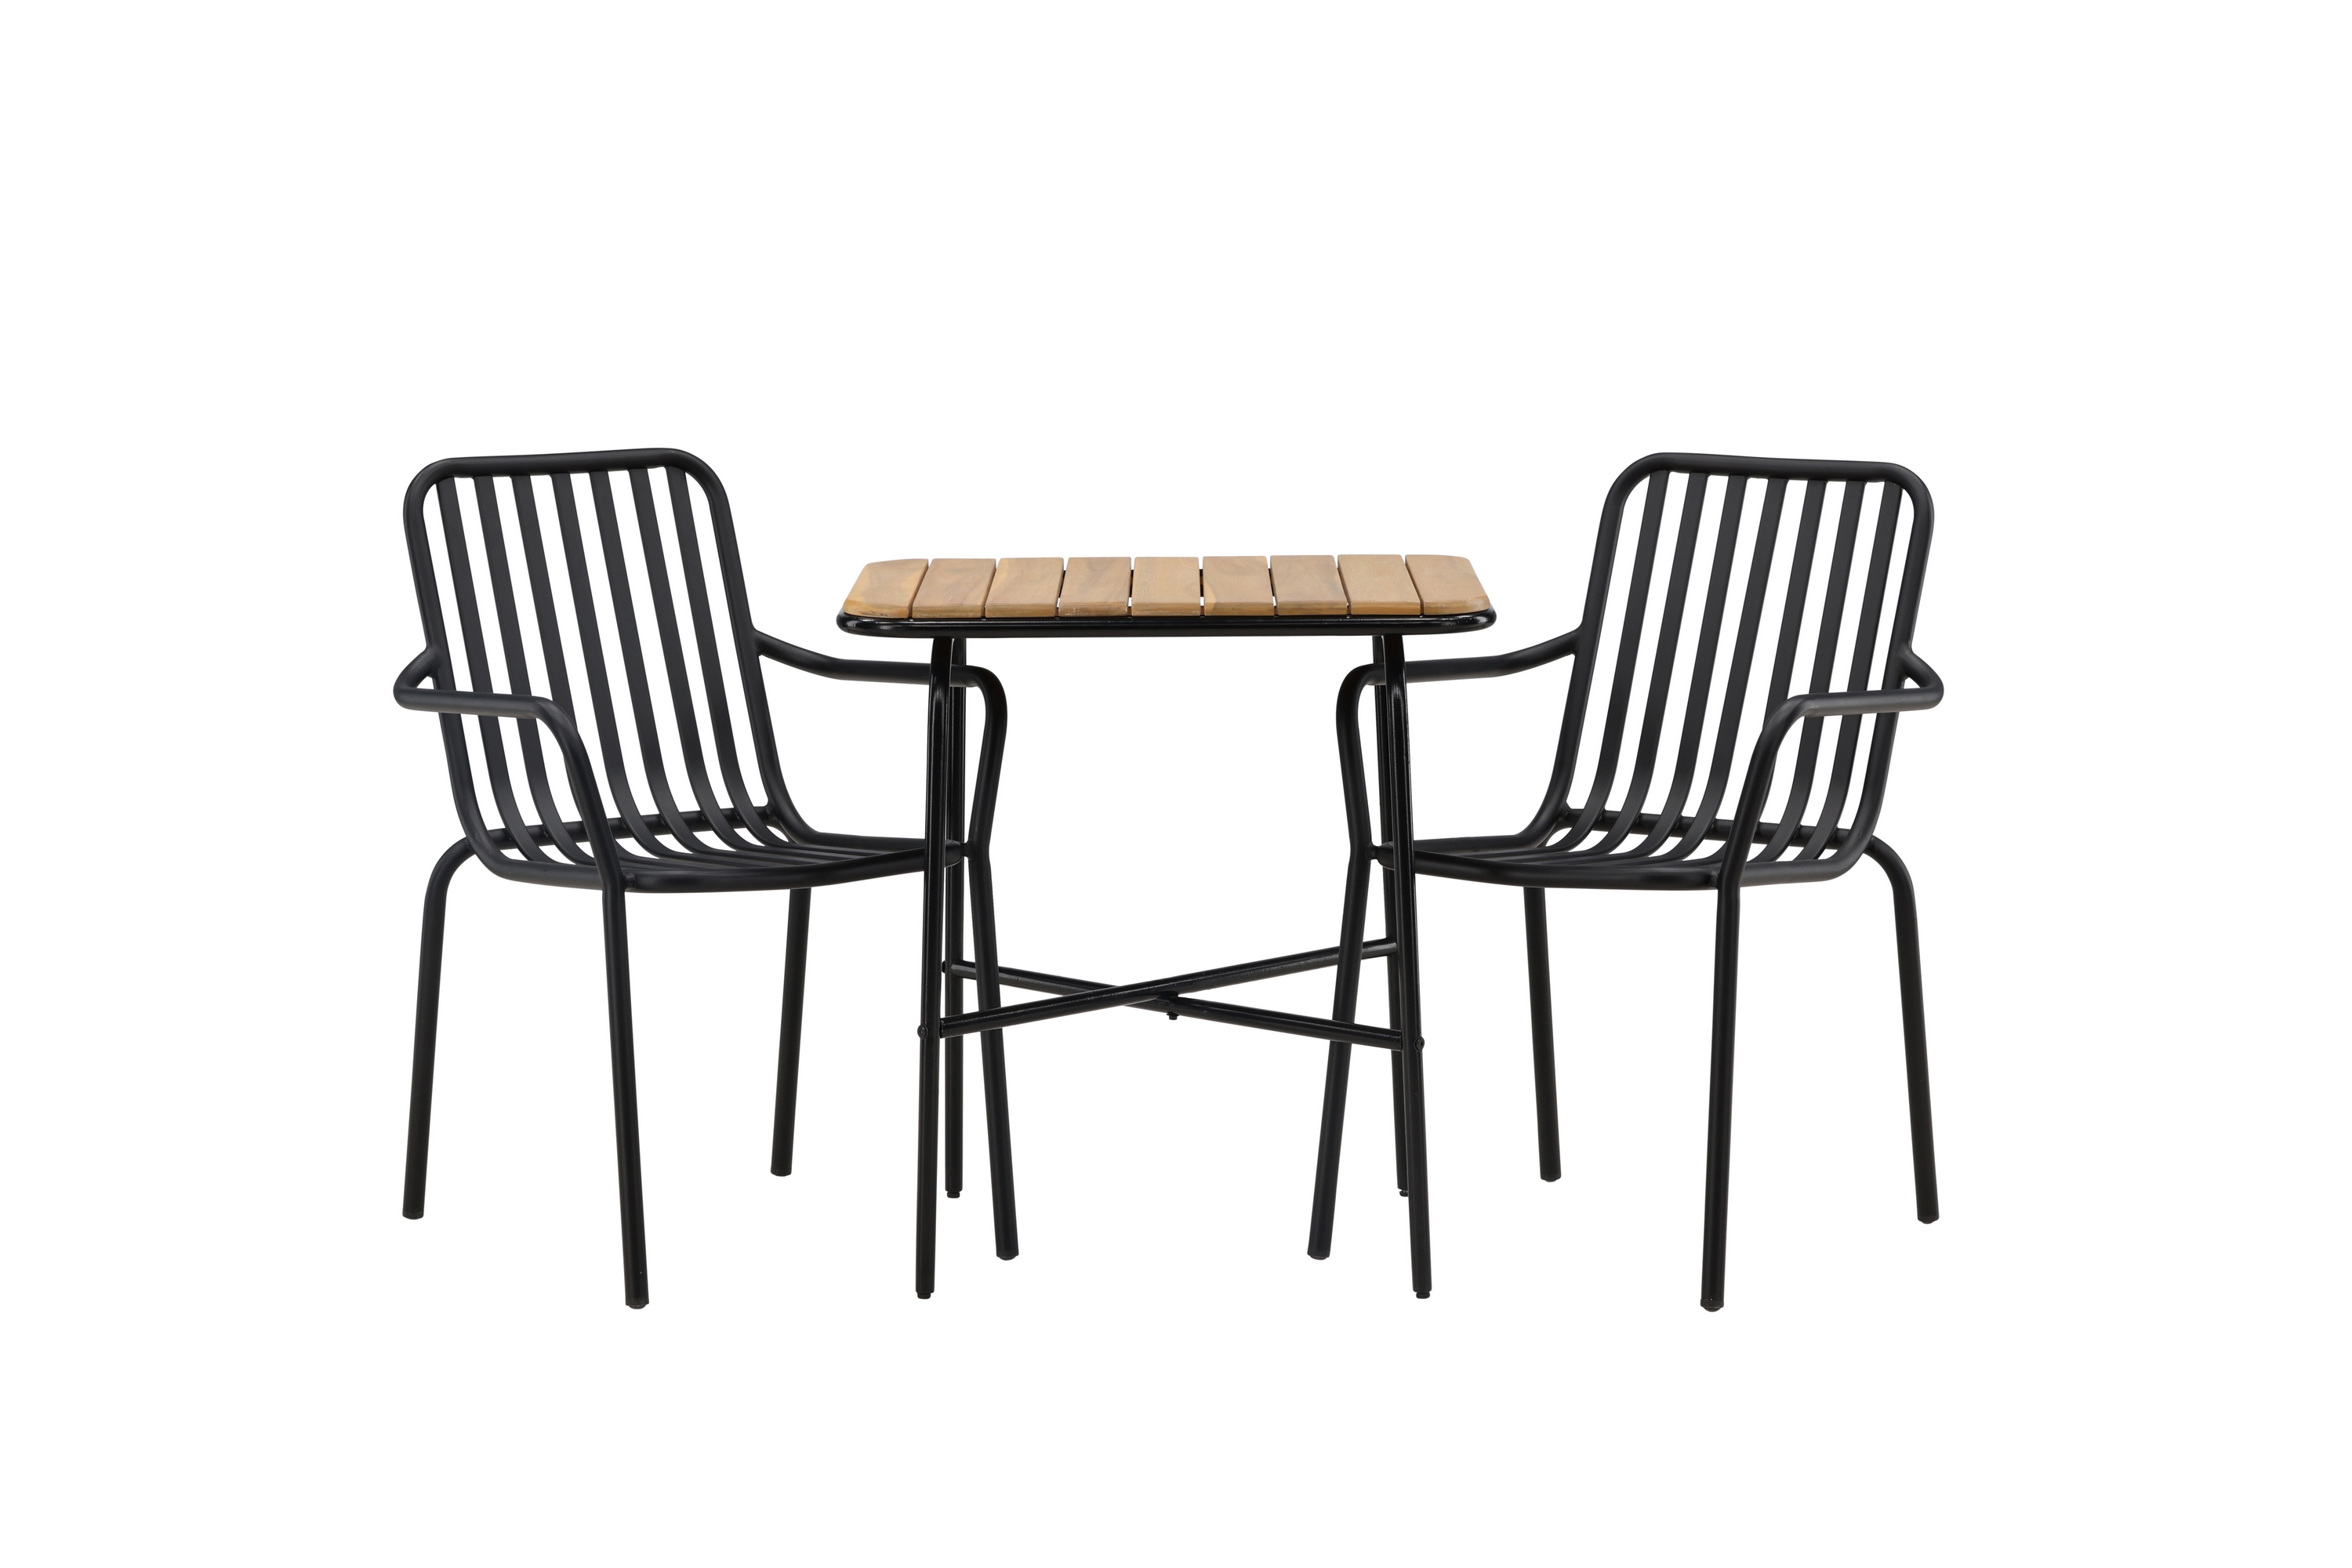 Parvekeryhmä Holmbeck 70 cm 2 Peking tuolia - Musta/Ruskea